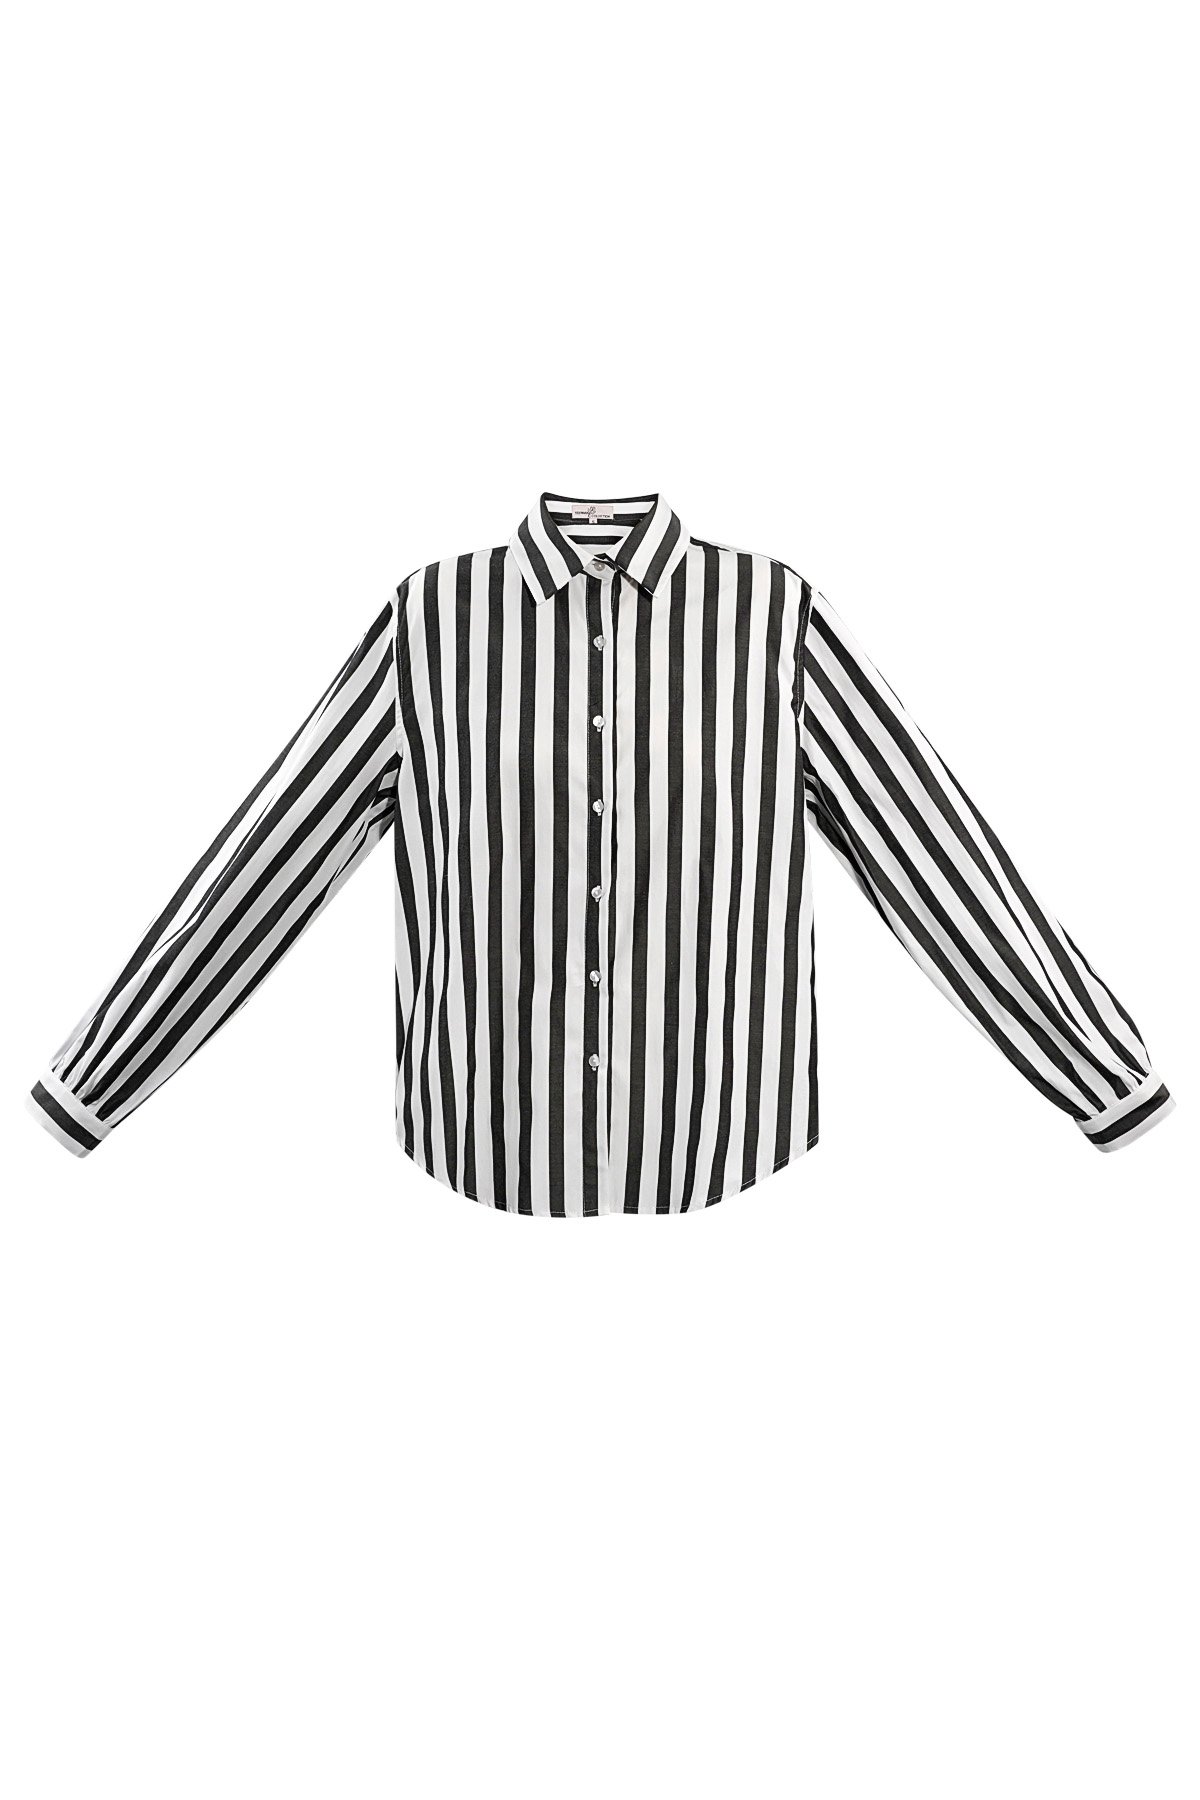 Çizgili gündelik bluz - siyah beyaz h5 